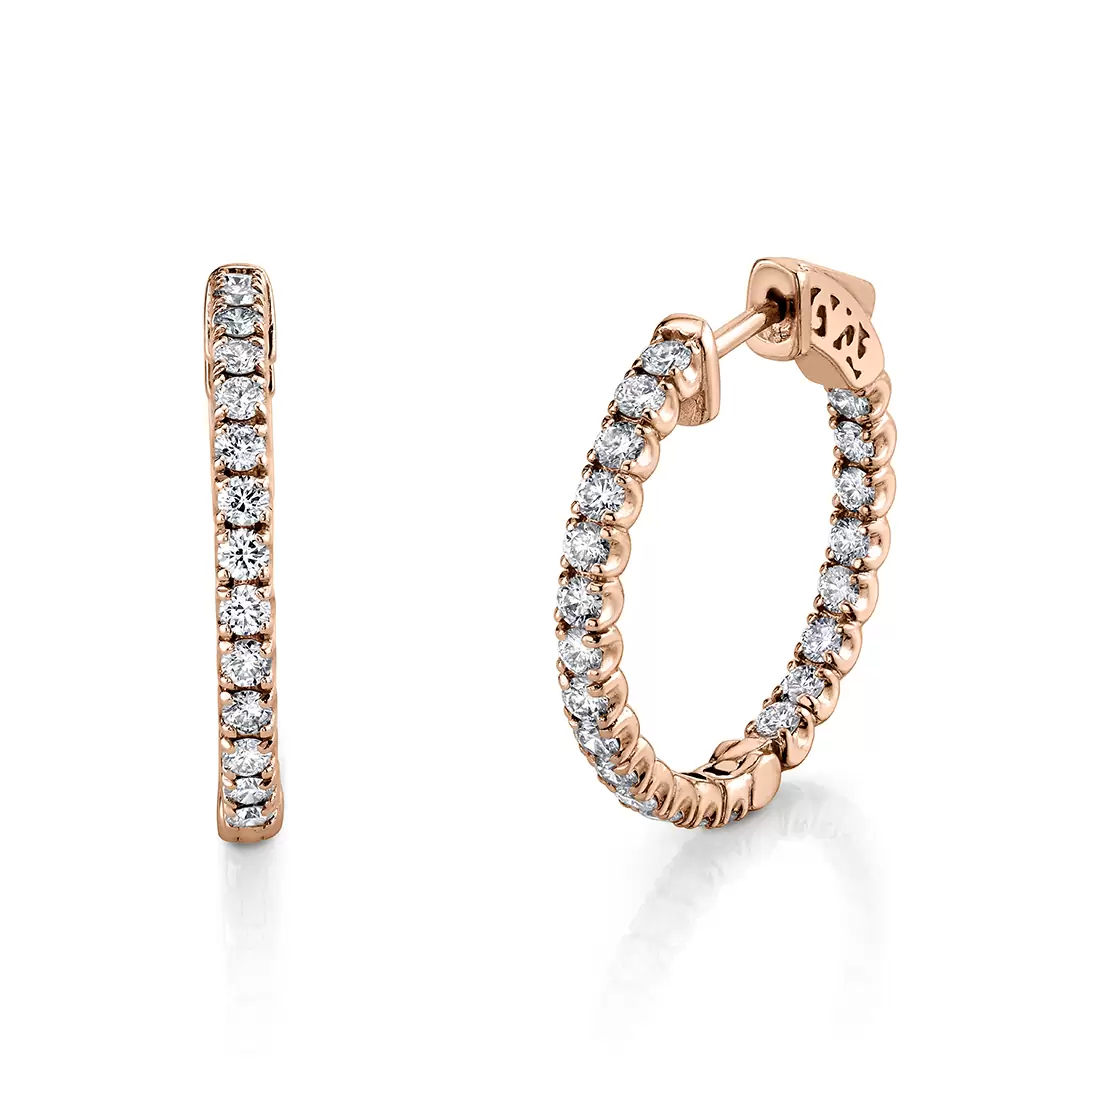 24mm diamond hoop earrings in rose gold